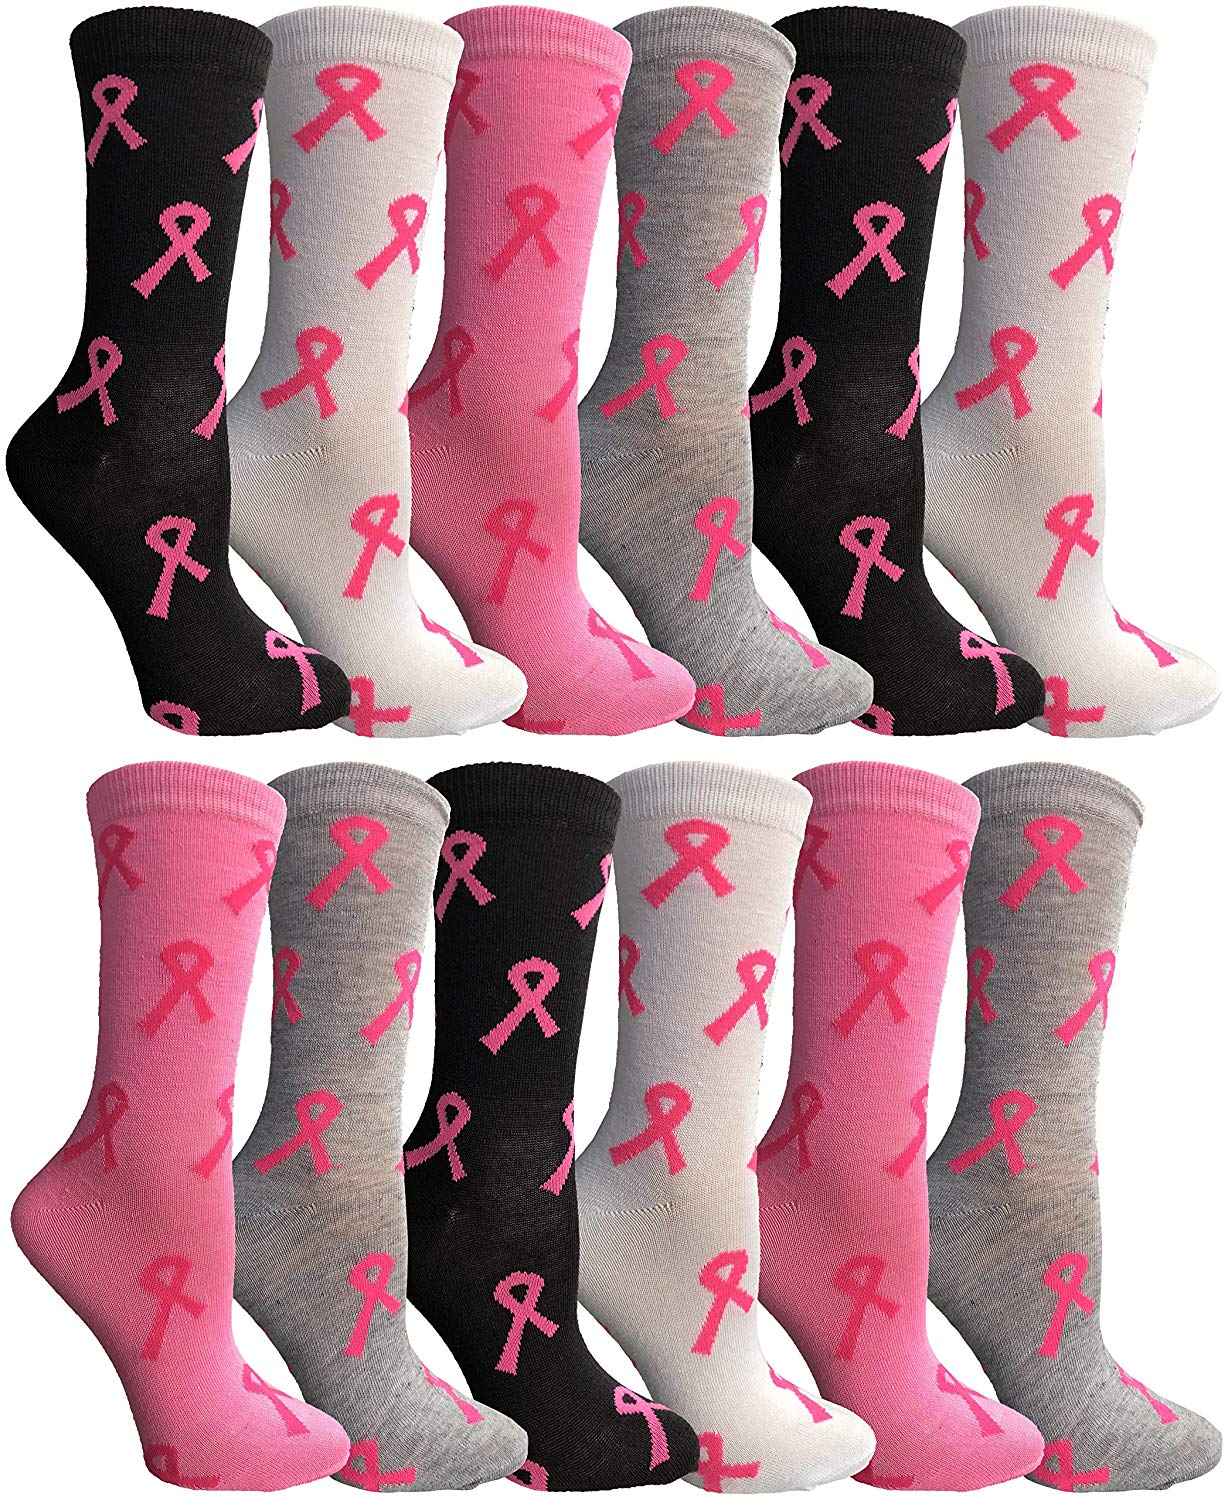 cancer awareness socks 2